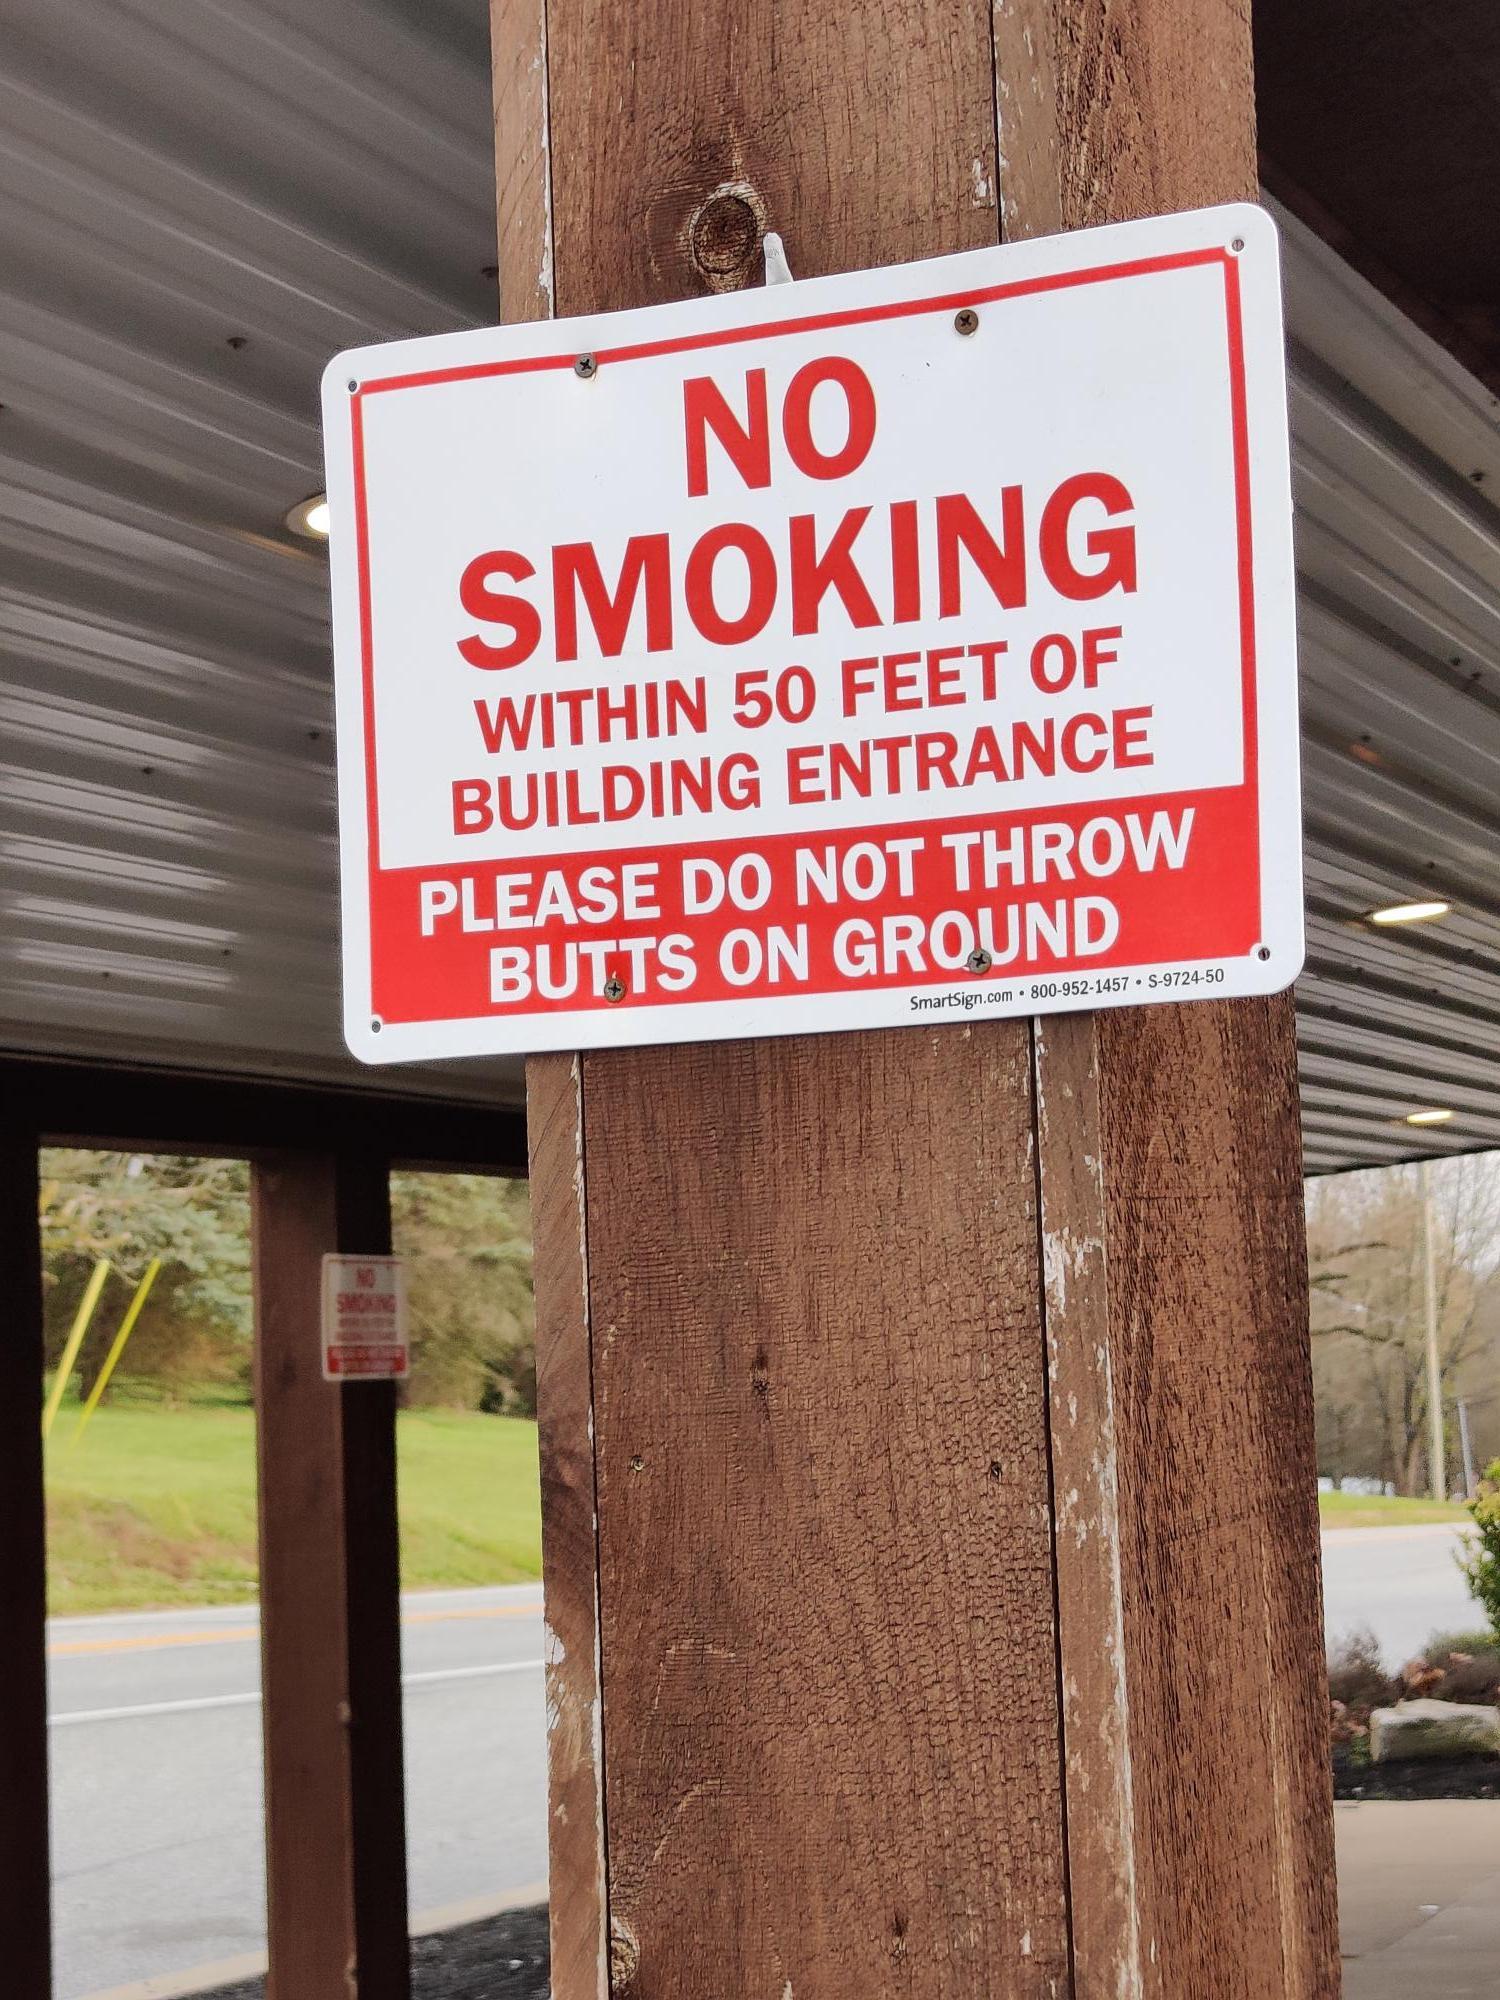 「建物から５０フィート以内では禁煙。吸殻を捨てないでください」というサインを掲示するレストランもあります